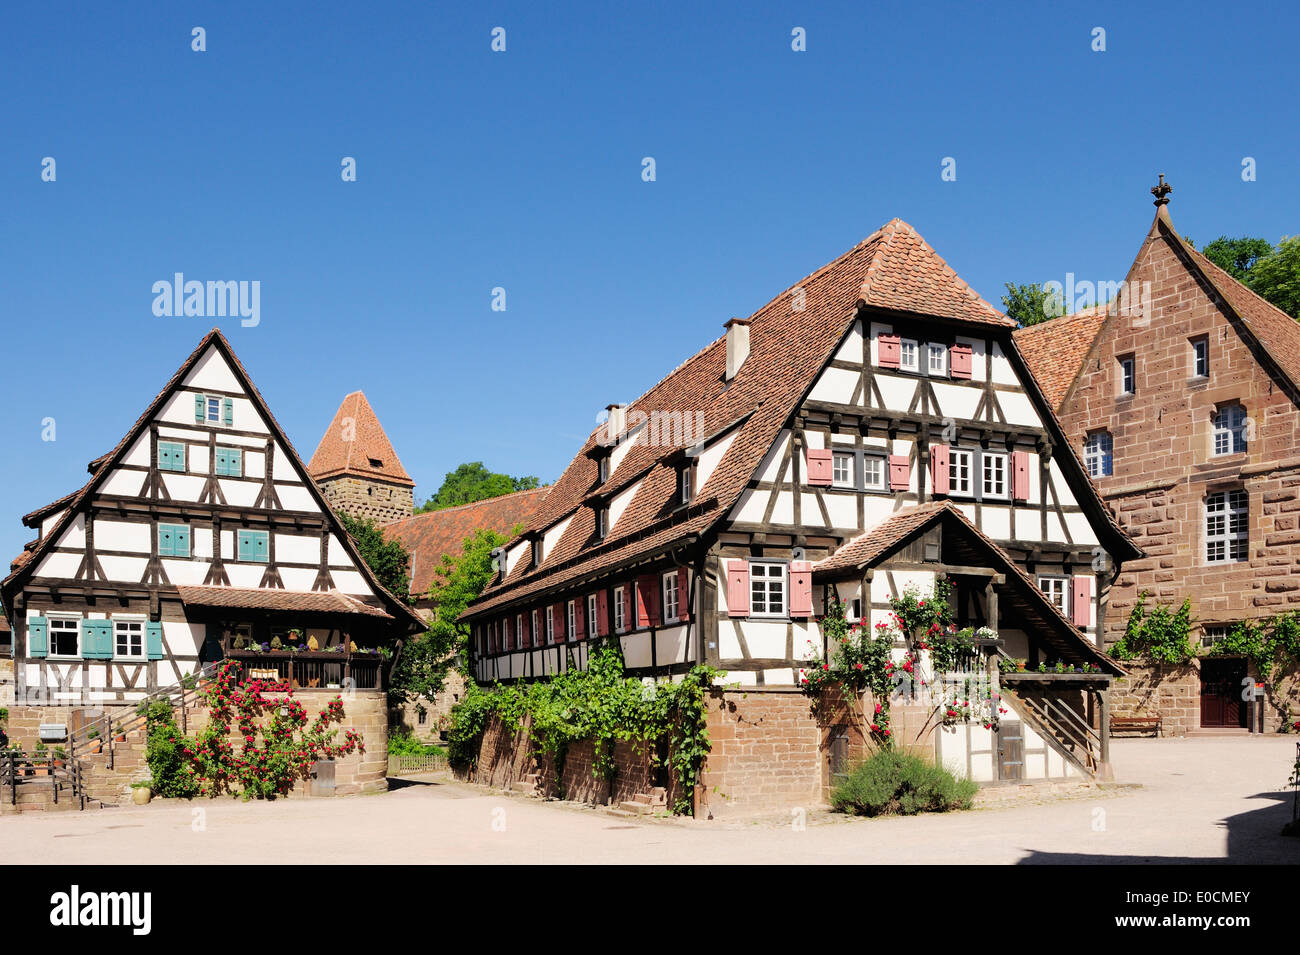 Casas de entramados en el patio del monasterio Kloster Maulbronn, Maulbronn, Baden-Württemberg, Alemania, Europa Foto de stock